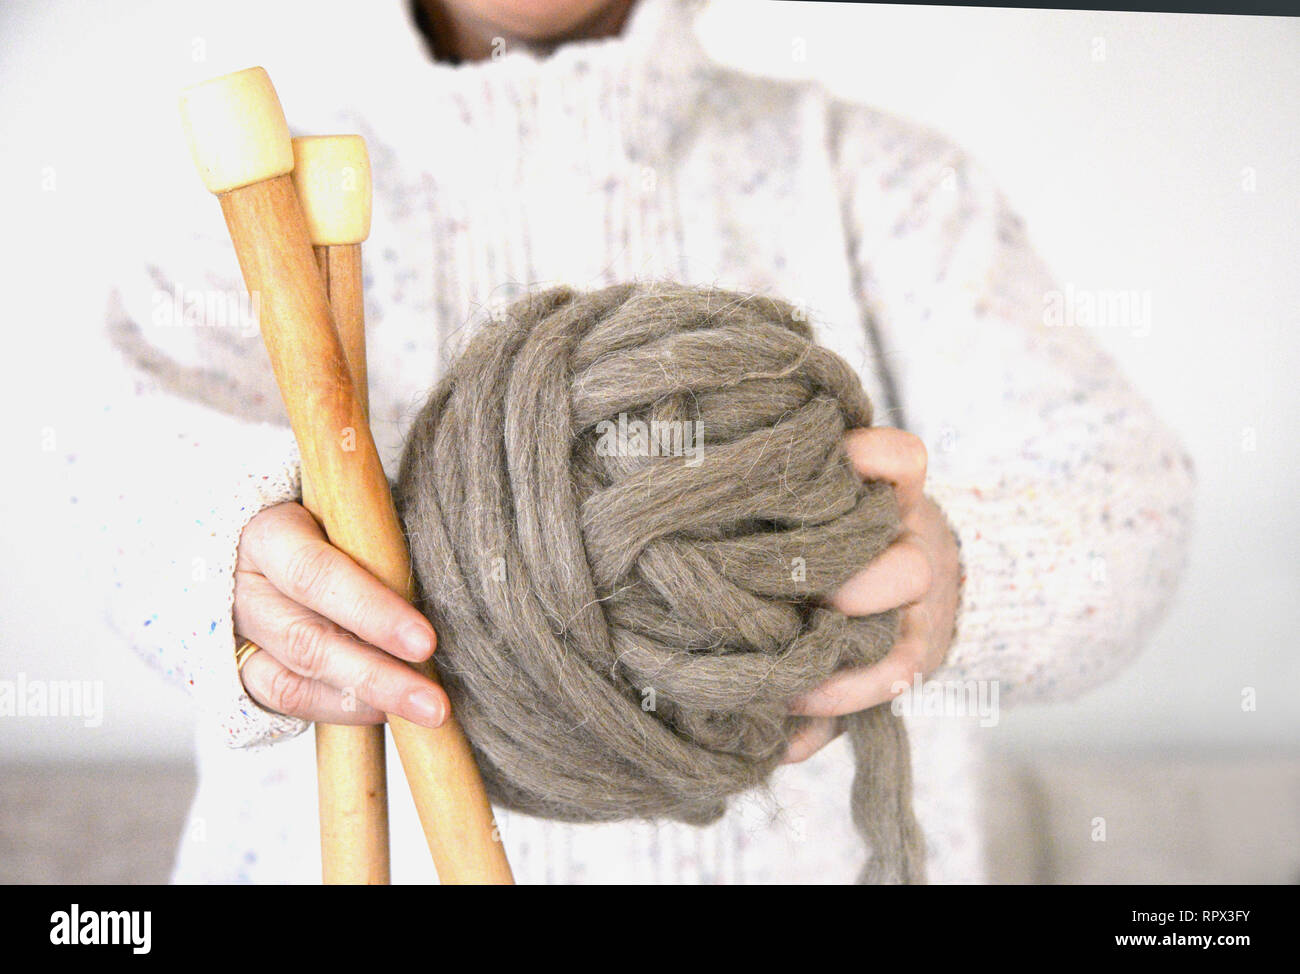 Mujer sosteniendo una bola de lana y agujas de tejer Foto de stock